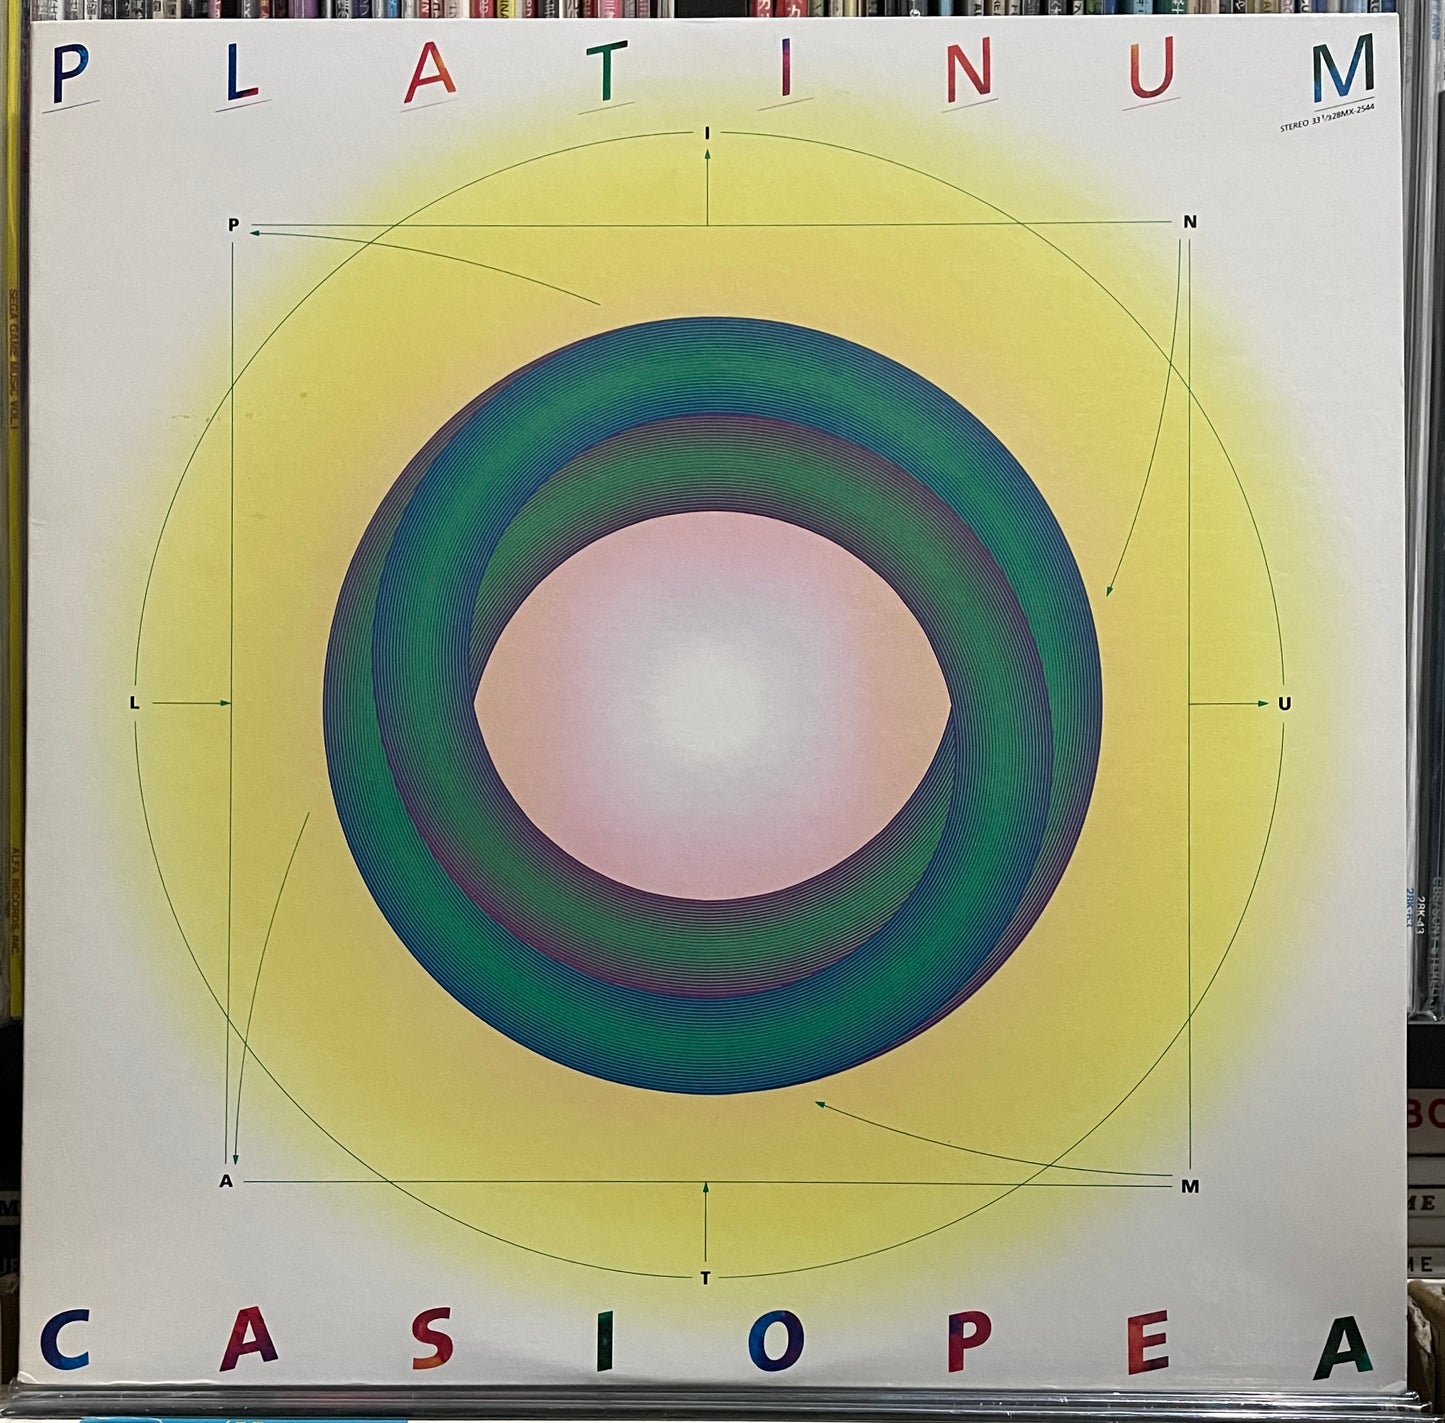 Casiopea “Platinum” (1987)